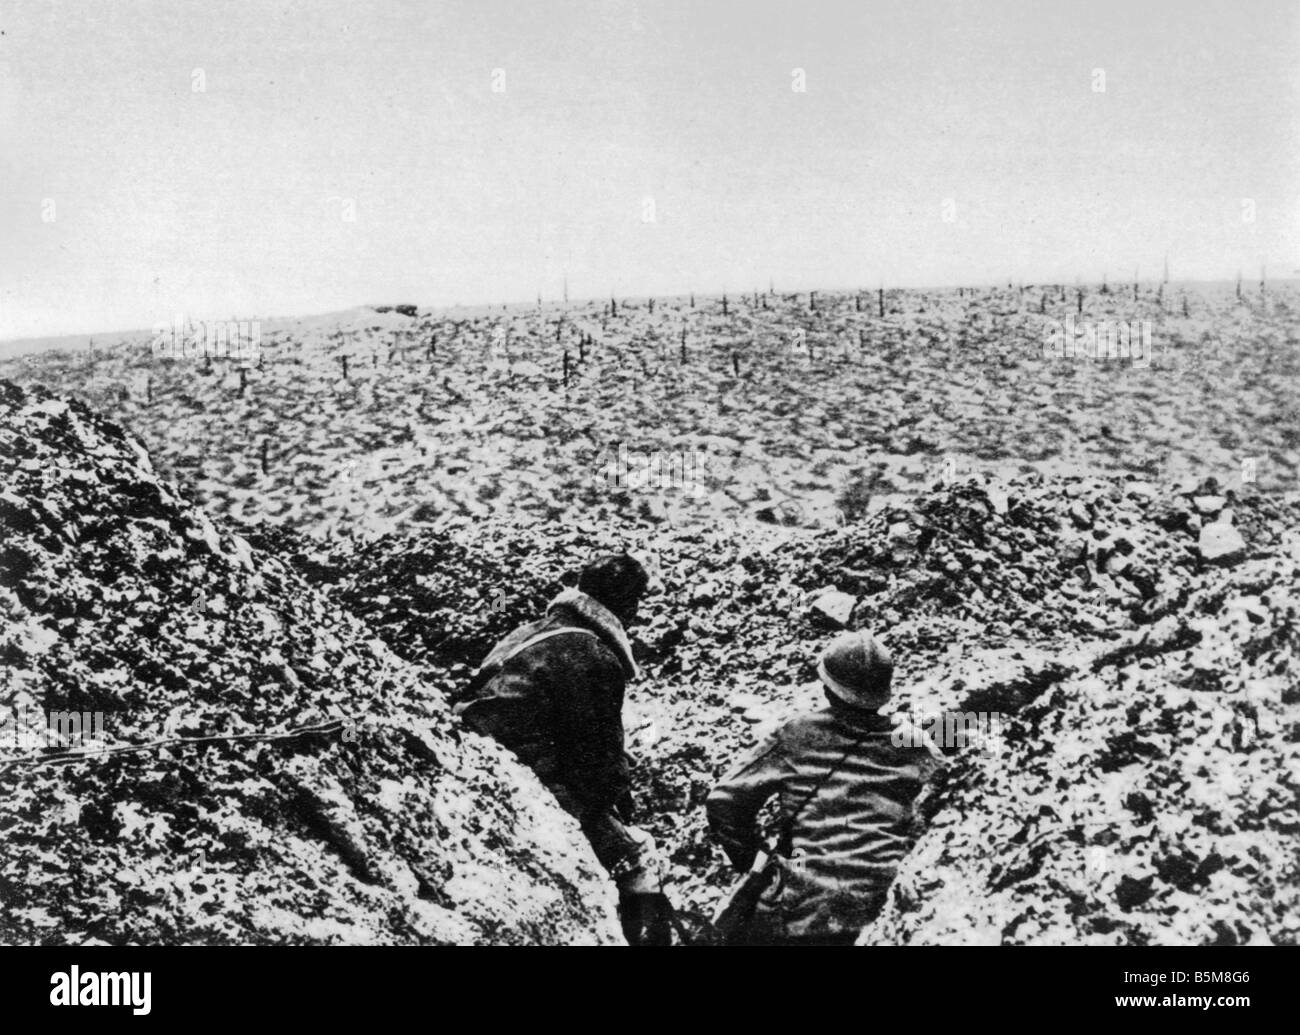 2 G55 F1 1917 3 Verdun 1917 französische position bei Damloup Geschichte WWI Frankreich Grabenkämpfe in der Nähe von Verdun 1917 französische Position am Damm Stockfoto